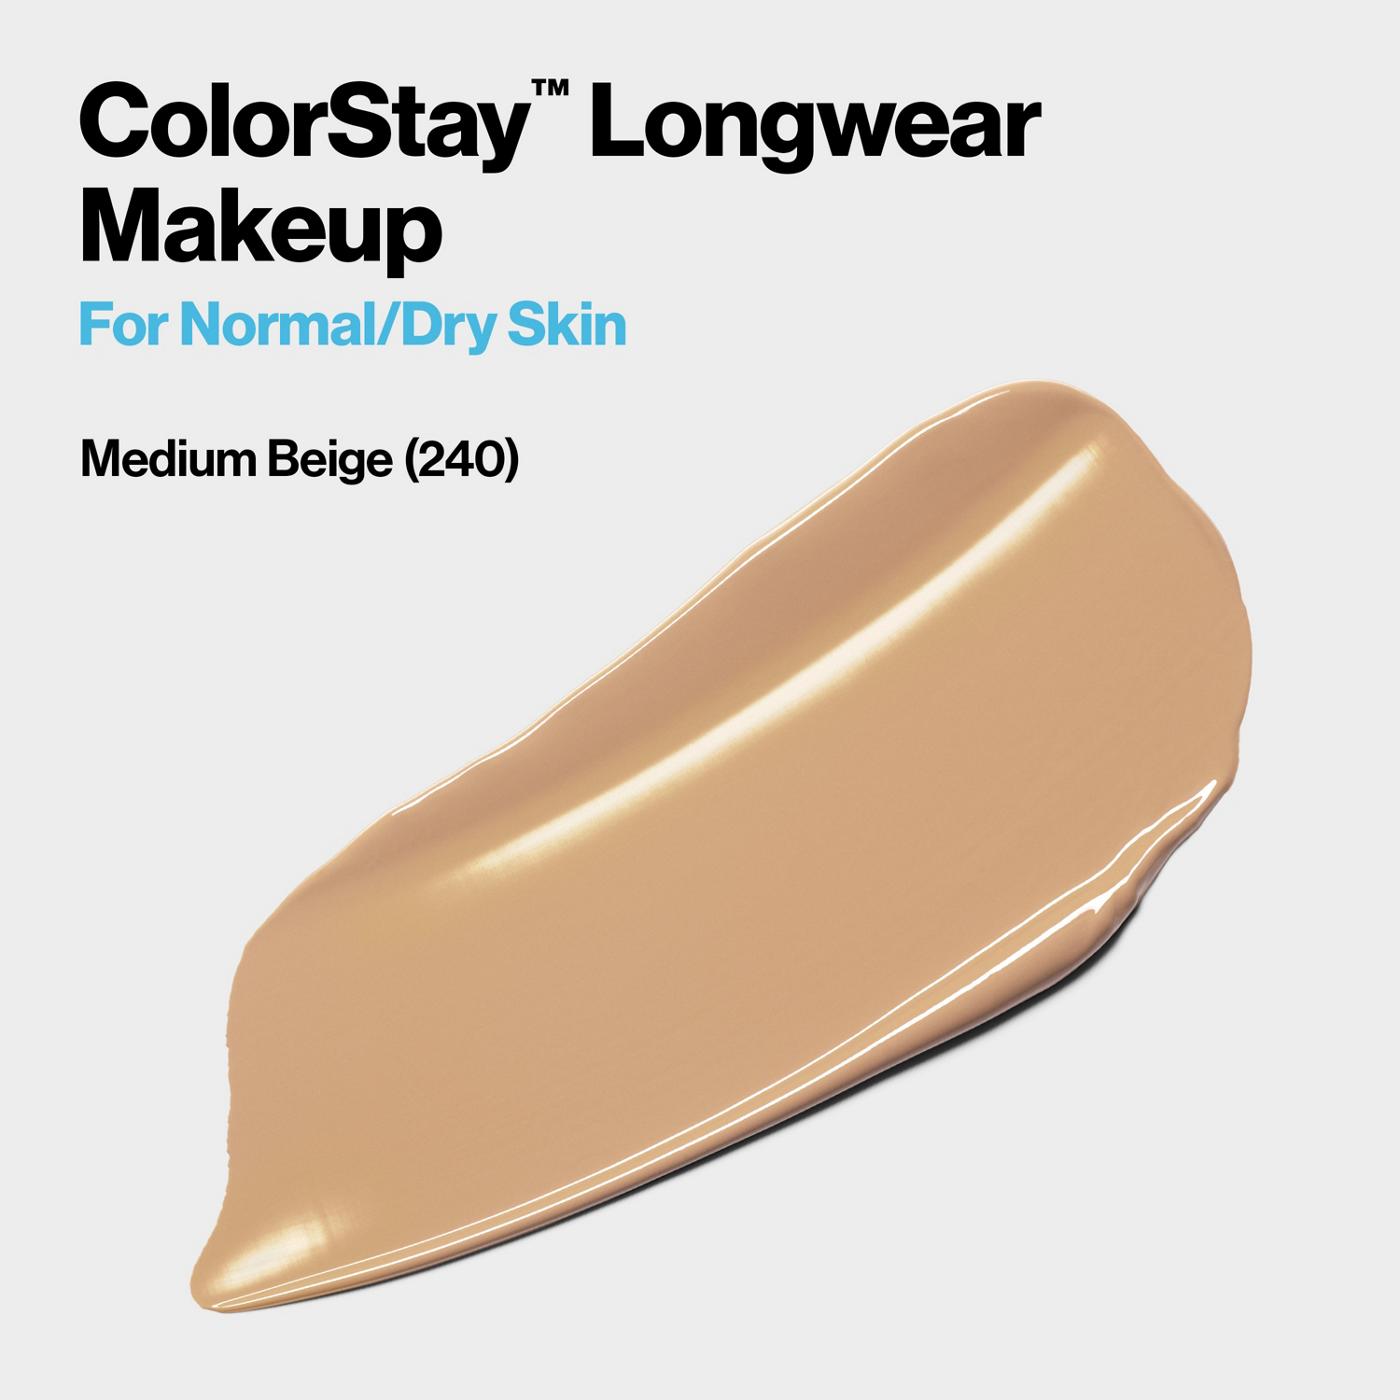 Revlon ColorStay Makeup for Normal/Dry Skin, 240 Medium Beige; image 5 of 6